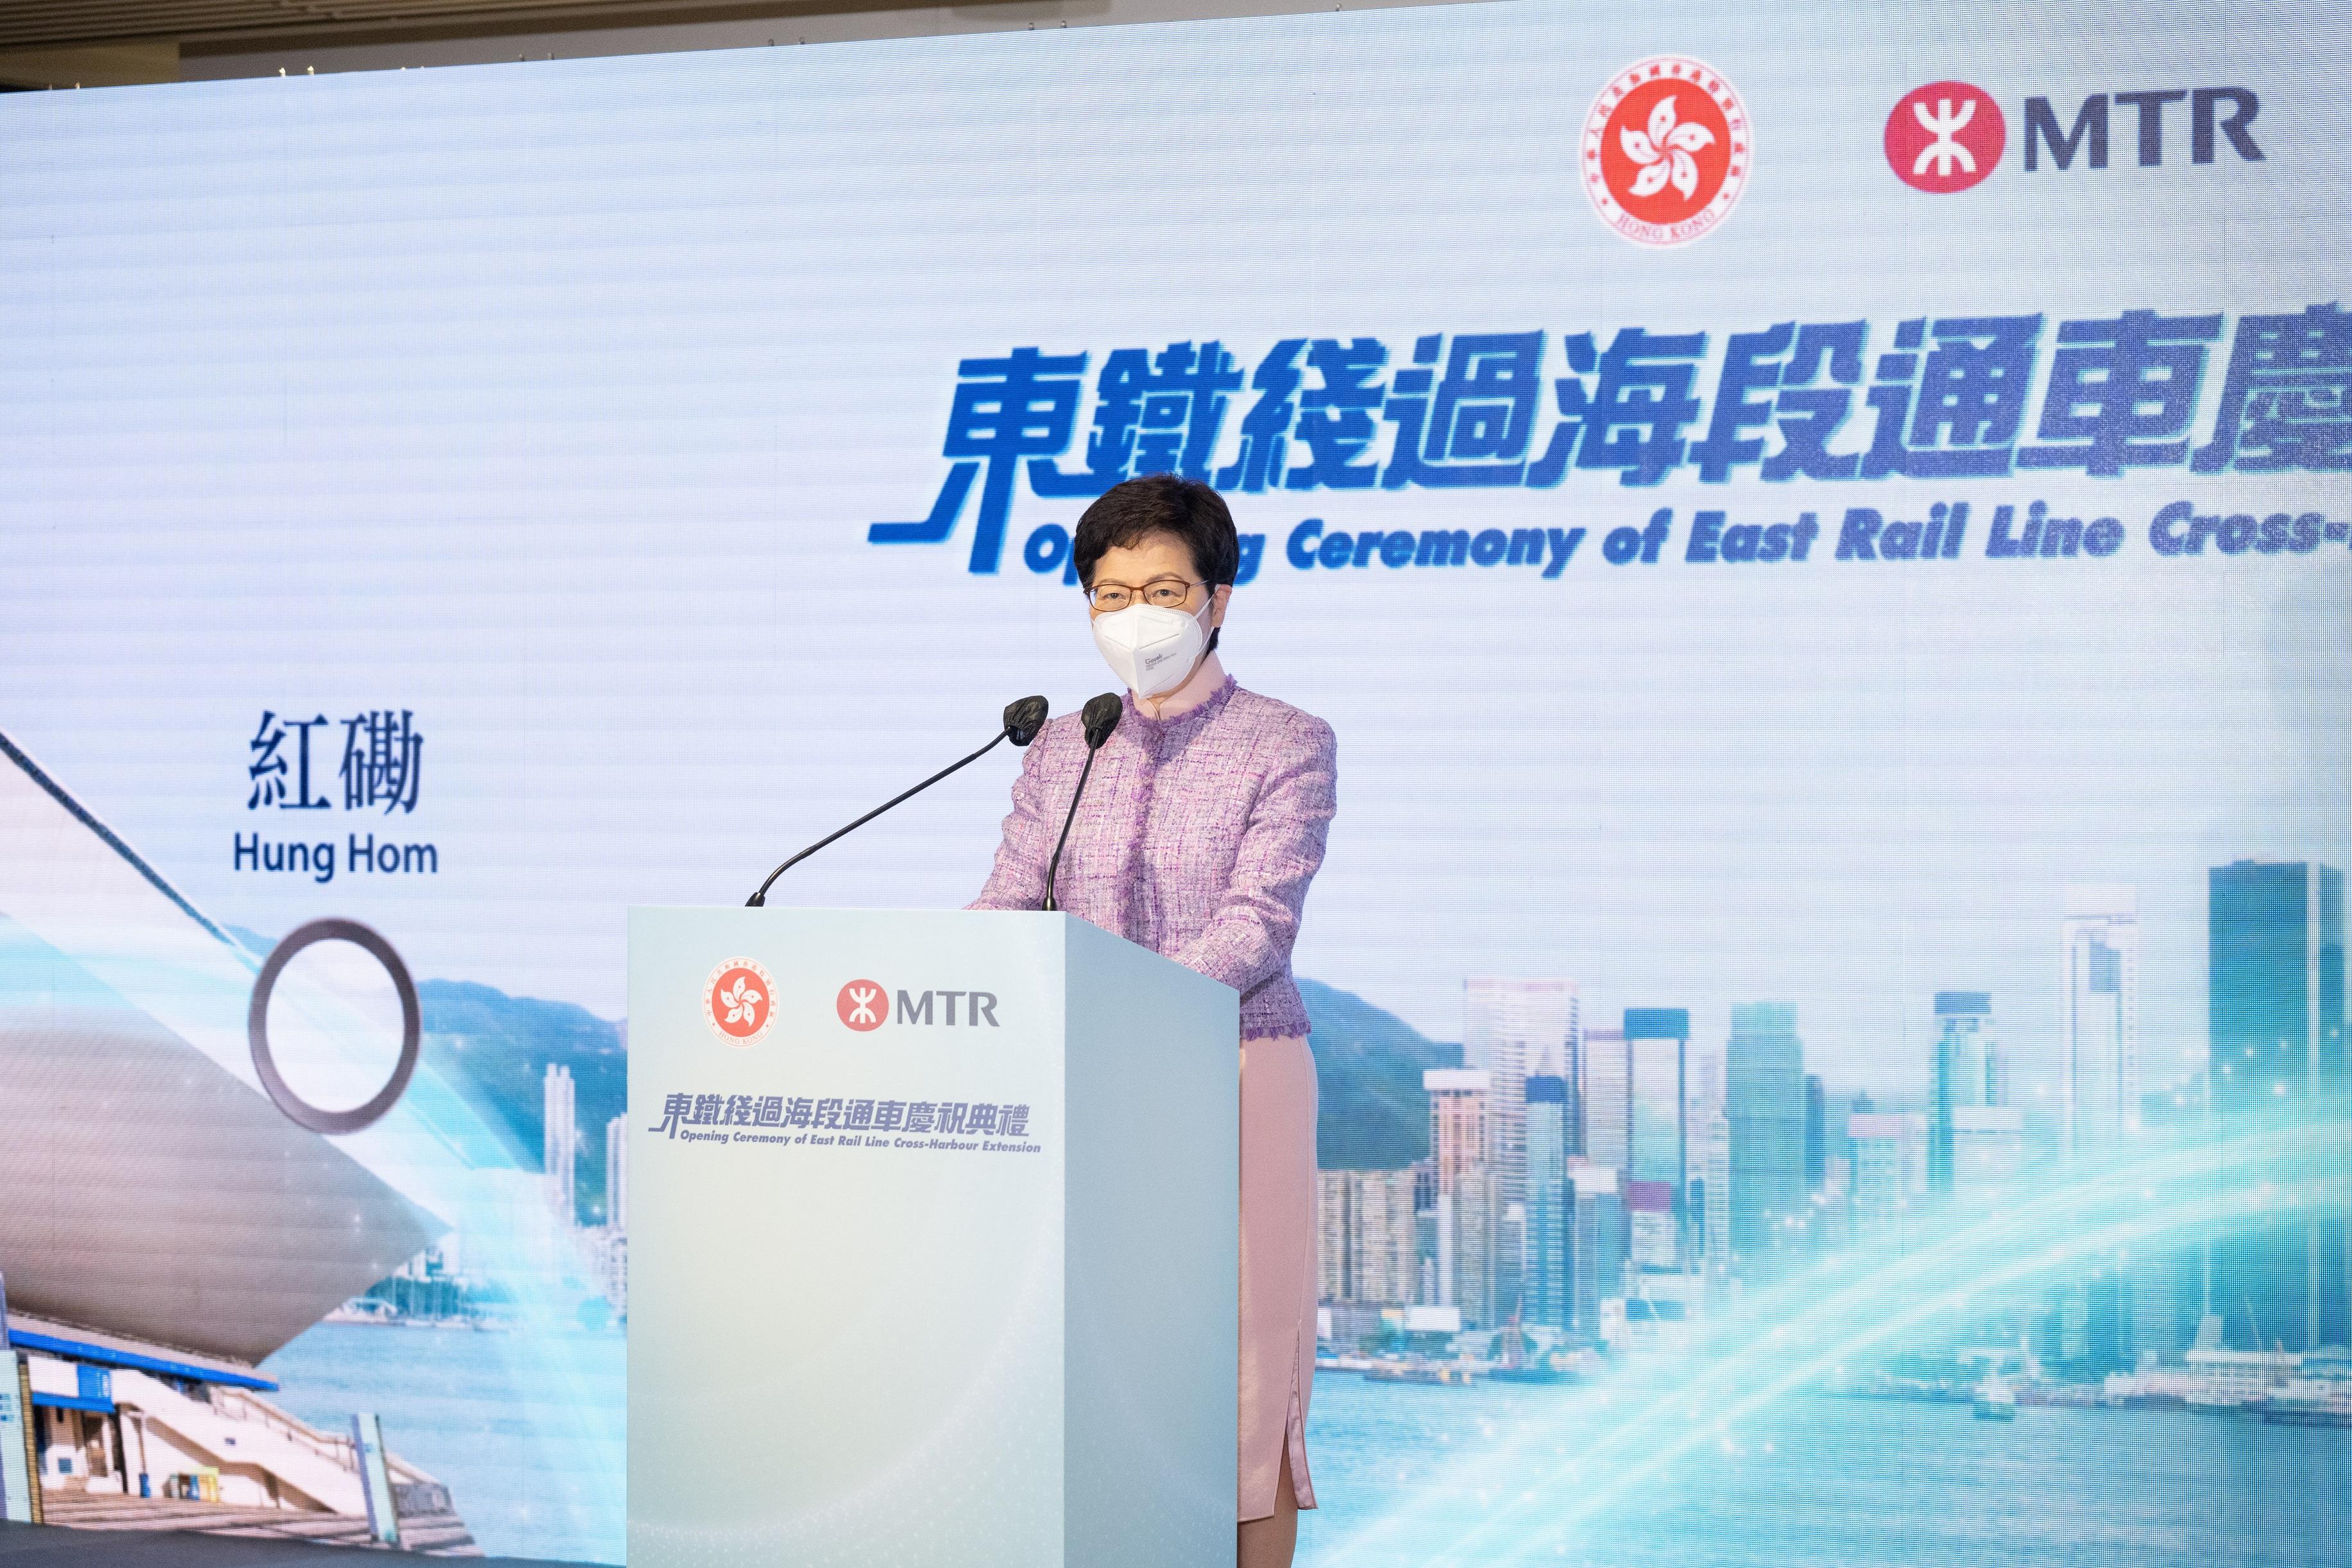 行政長官林鄭月娥今日（五月十四日）在東鐵線過海段通車慶祝典禮致辭。

